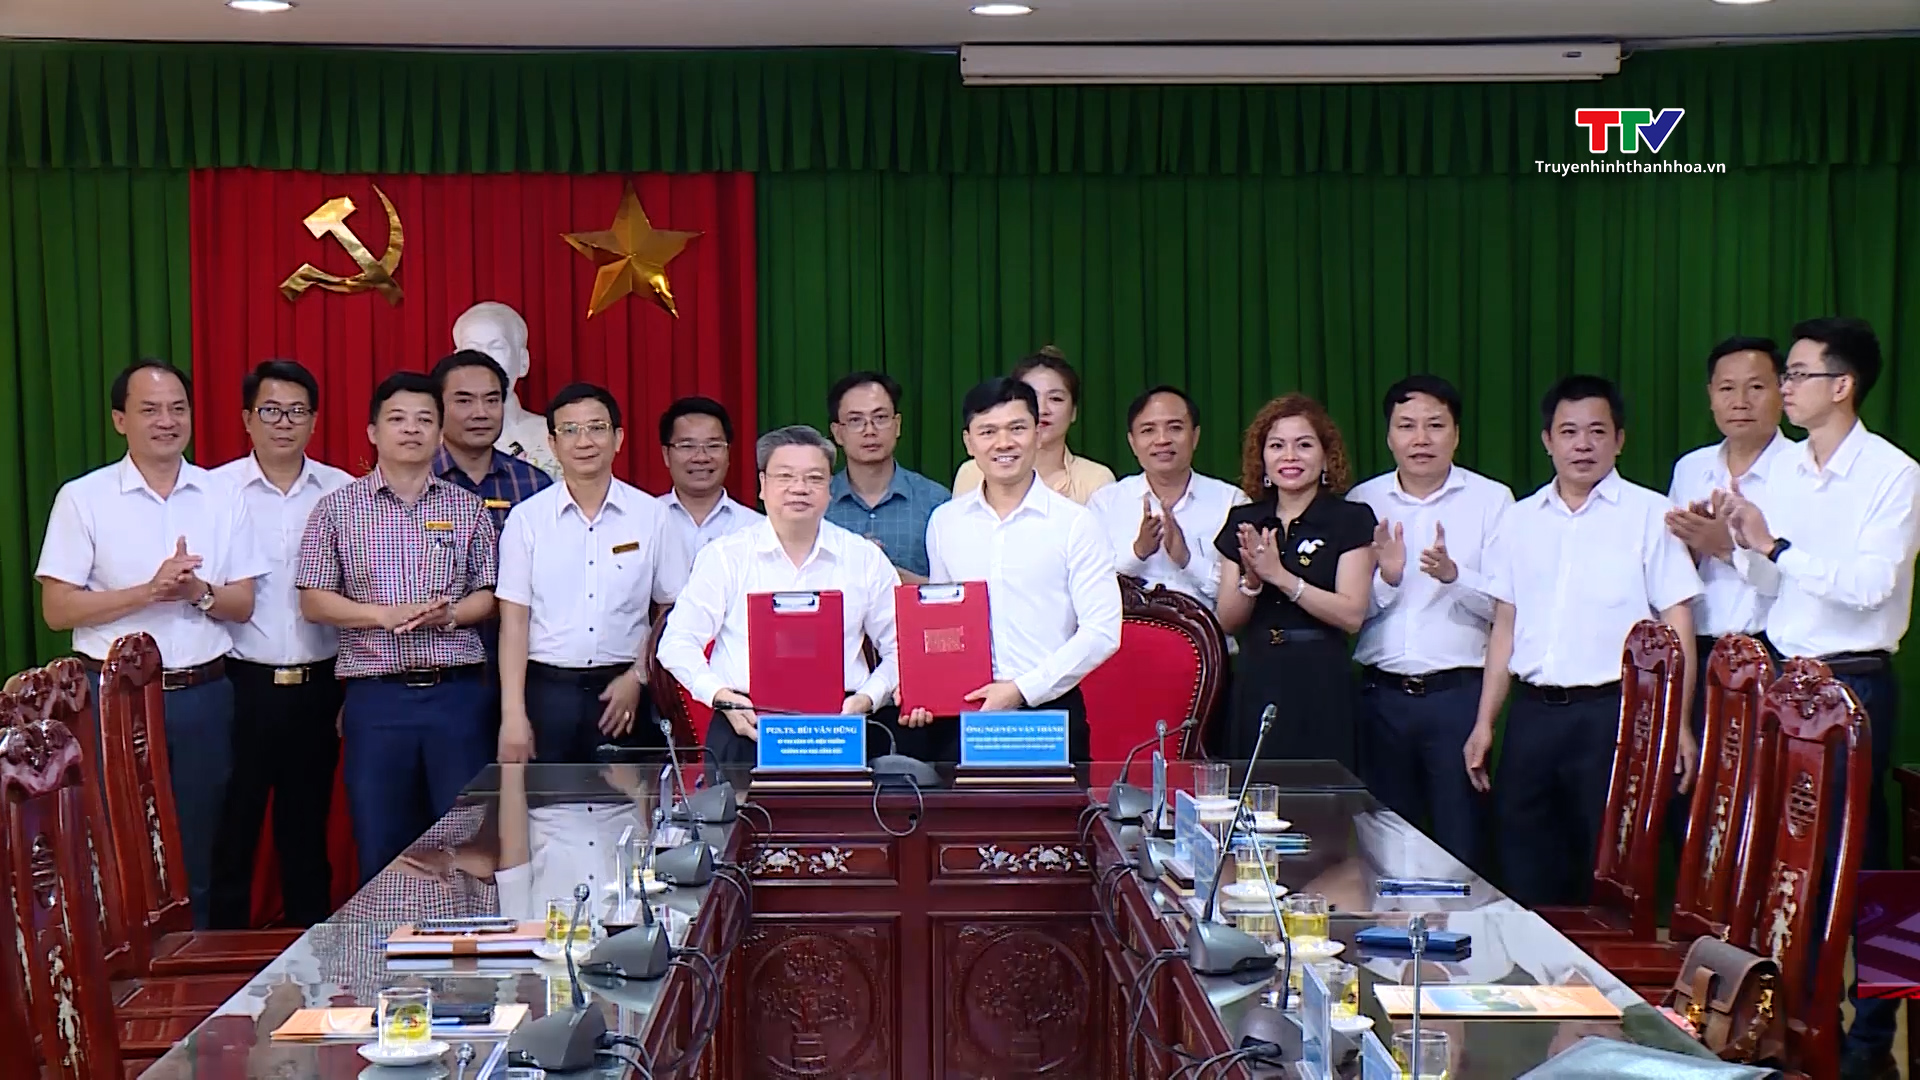 Trường Đại học Hồng Đức và Hiệp hội Doanh nghiệp thành phố Thanh Hóa ký kết hợp tác - Ảnh 2.